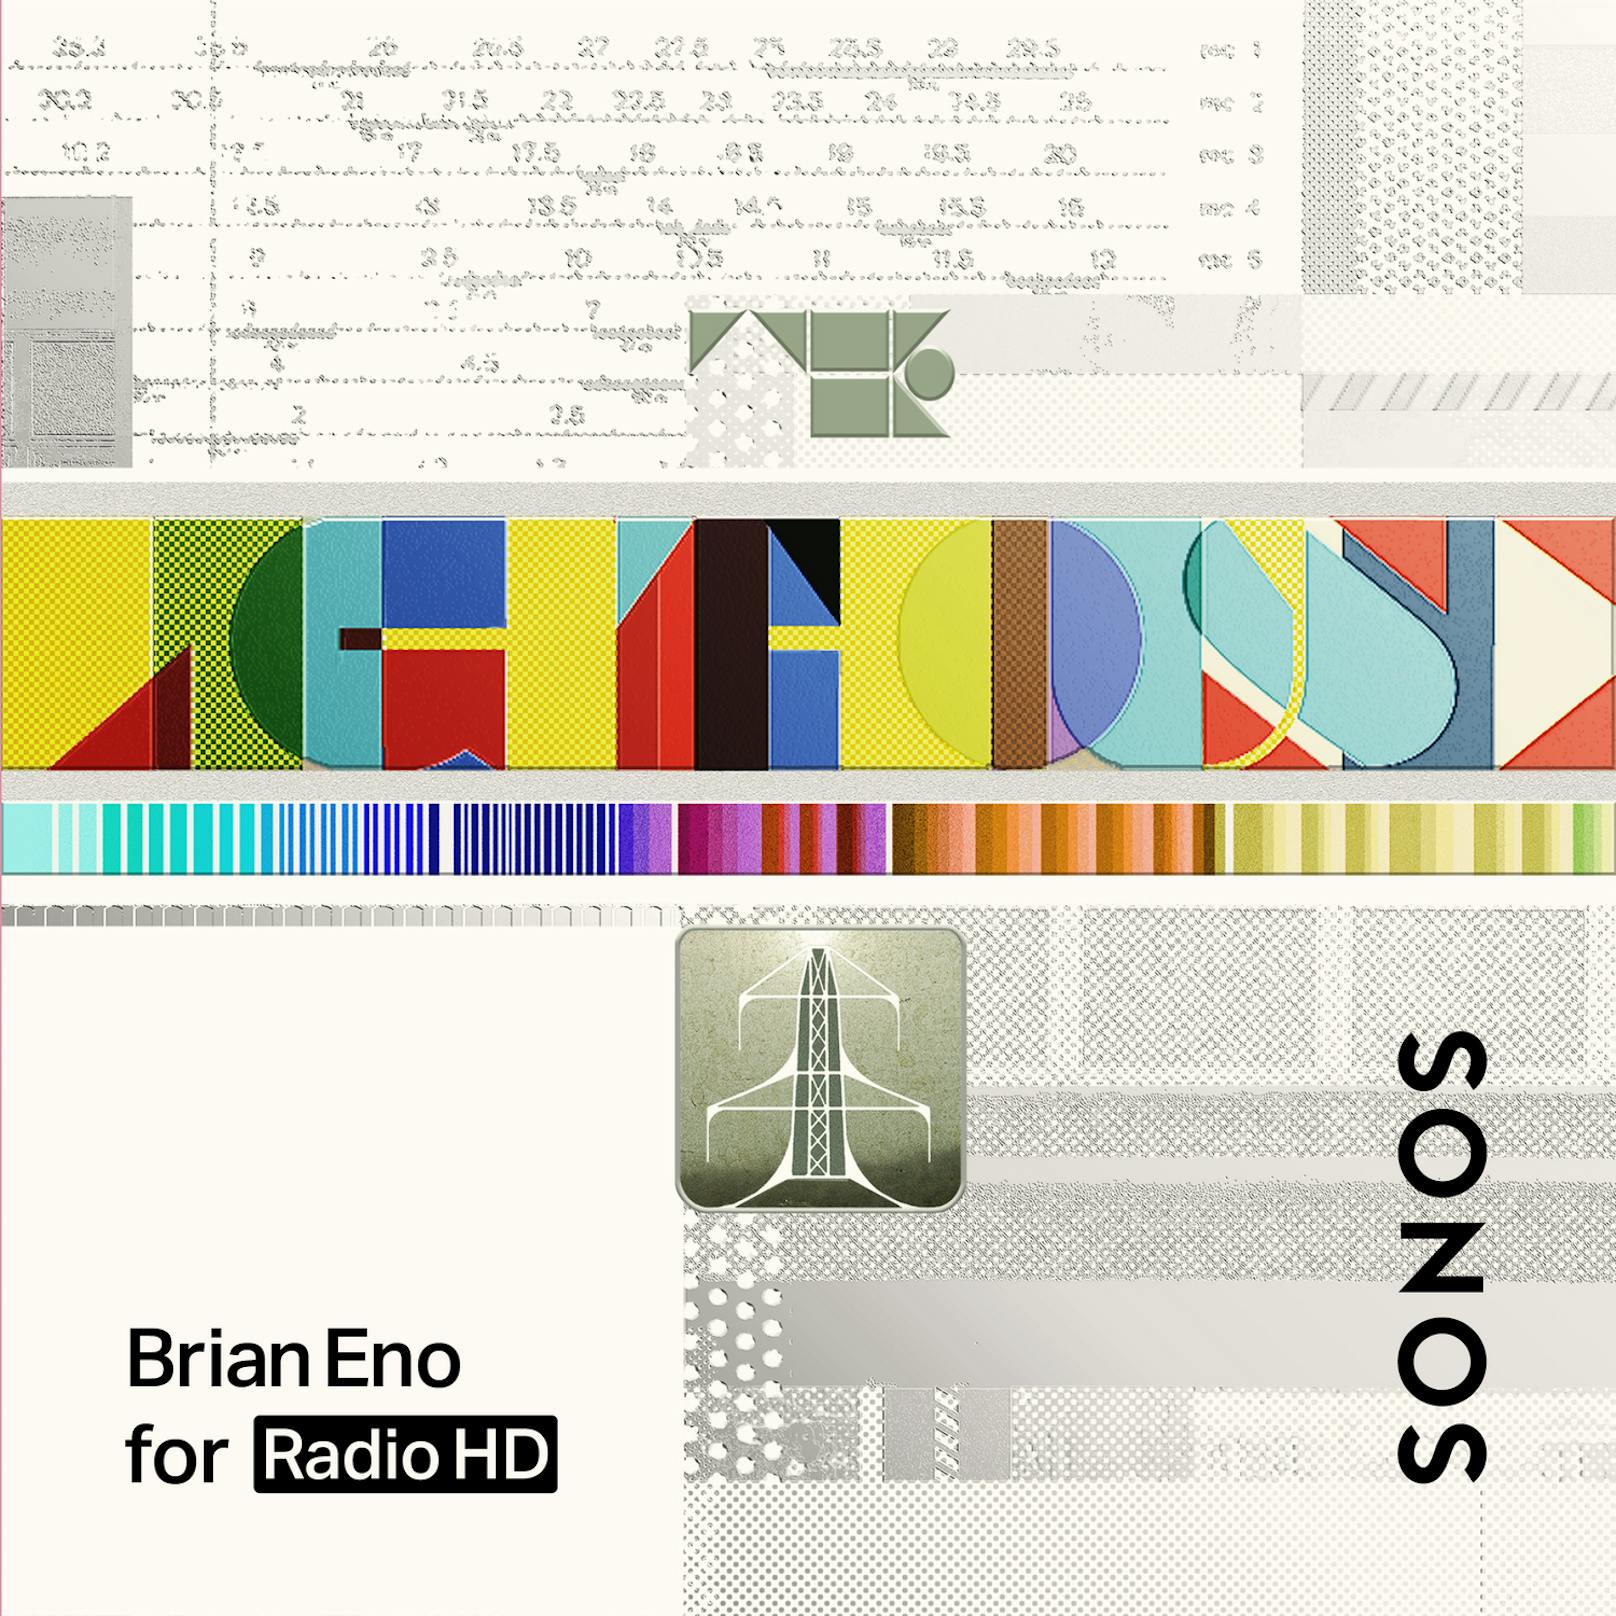 Sonos bringt seinen Abo-Musikdienst Sonos Radio HD nun auch nach Österreich. Für 7,99 Euro monatlich gibt es exklusive Tracks und CD-Audioqualität.